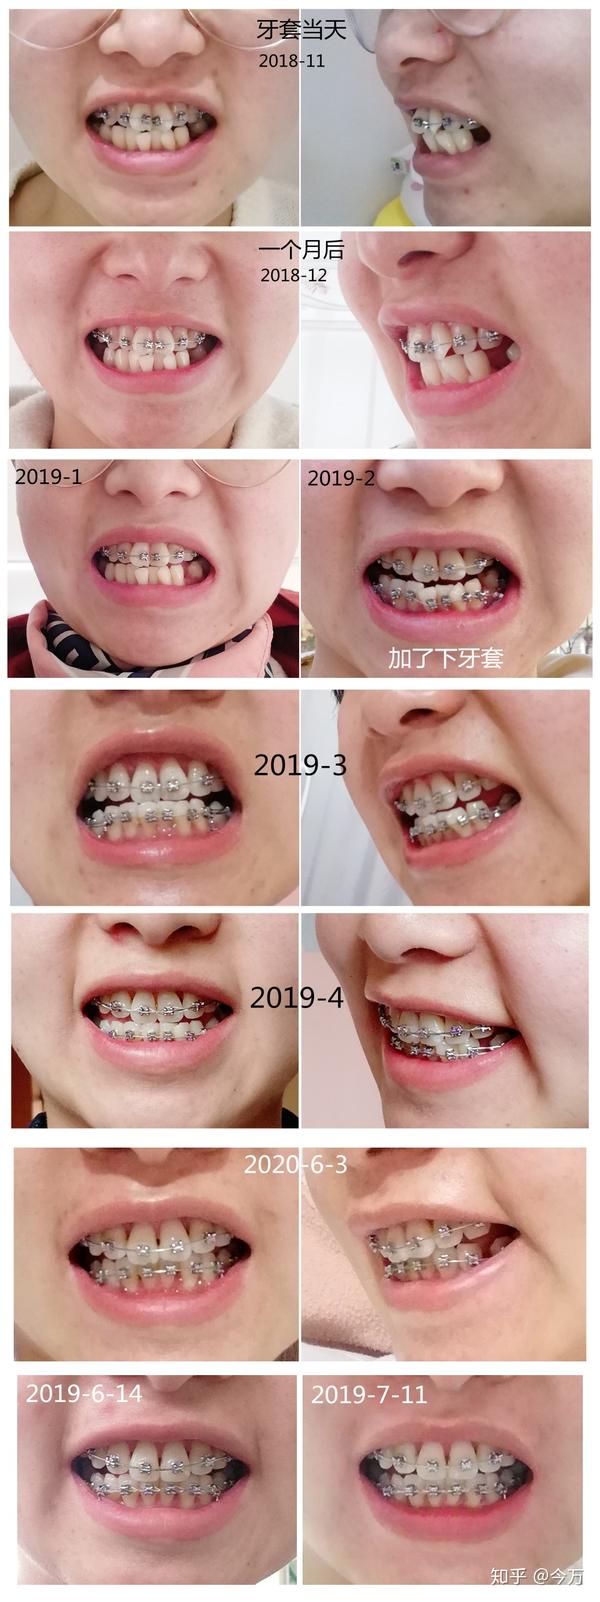 24岁牙齿矫正过程照片对比77经验分享